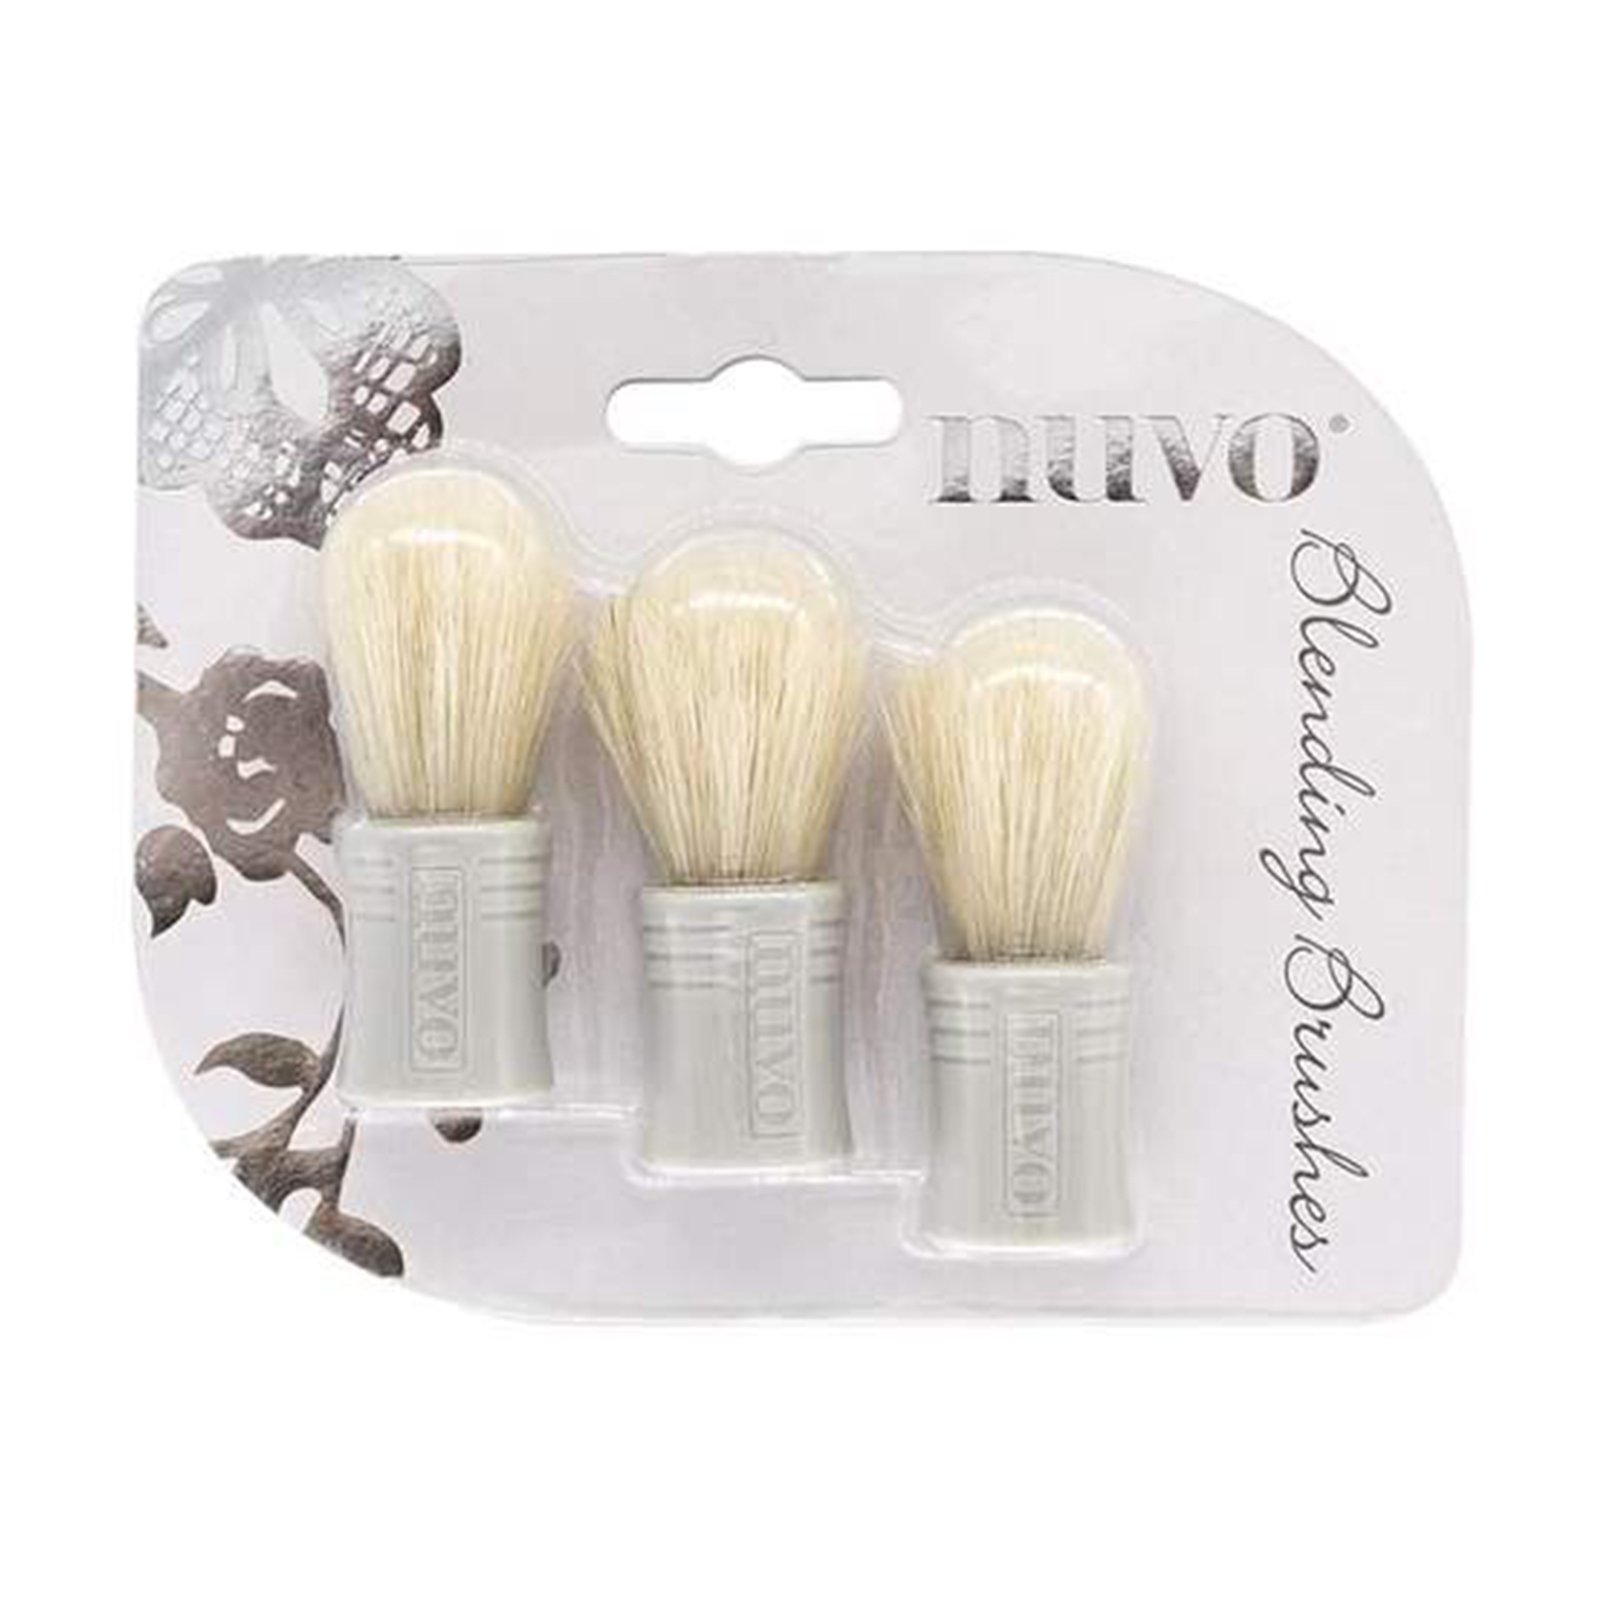 Nuvo • Blending brushes 3pcs